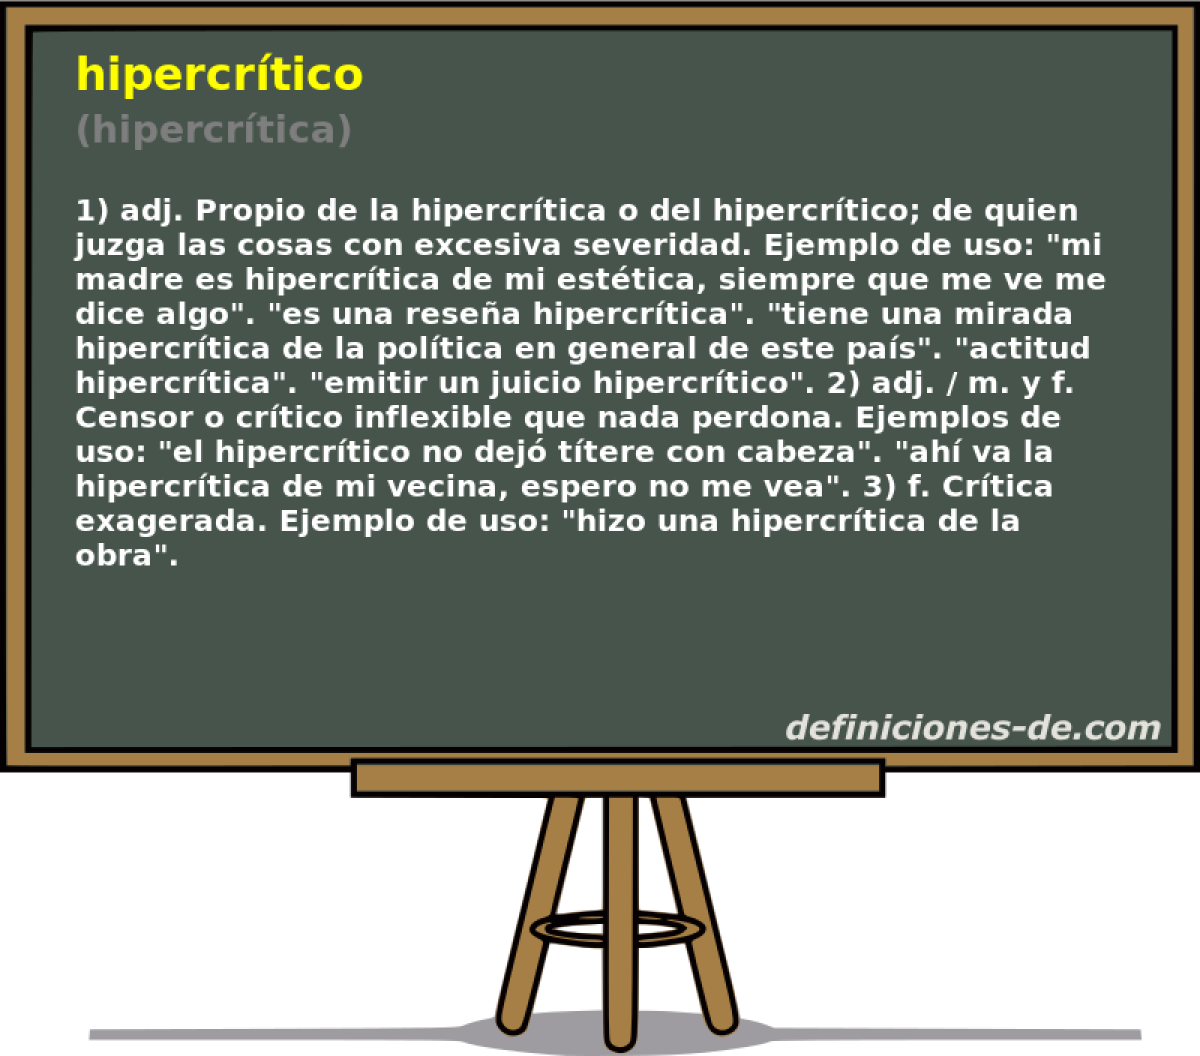 hipercrtico (hipercrtica)